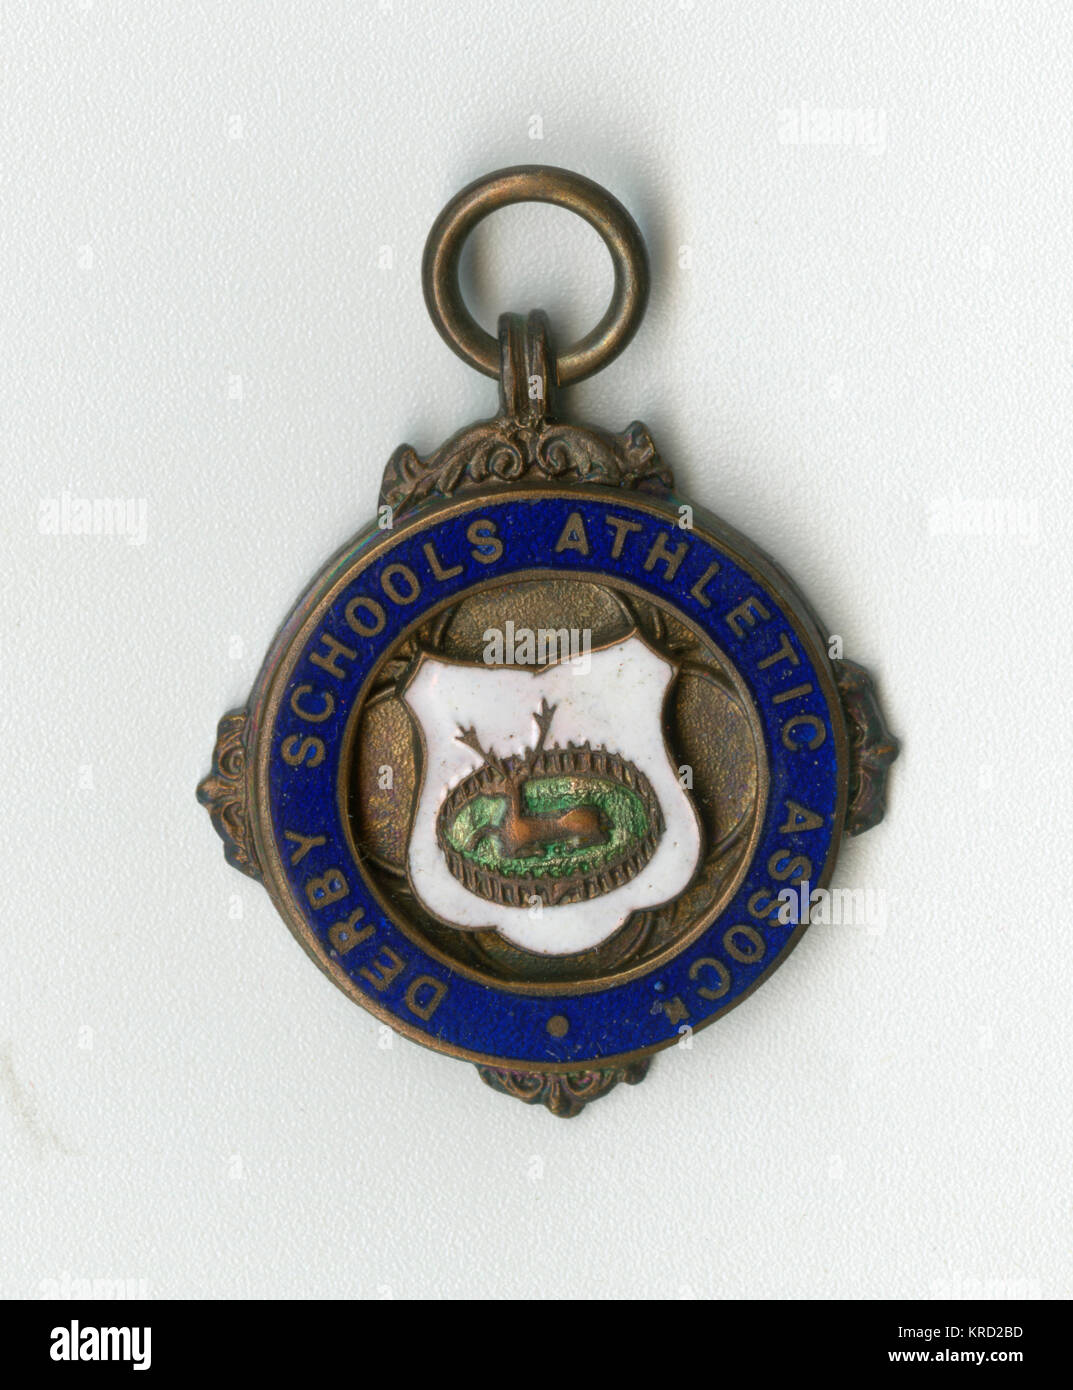 Medalla de la Asociación Atlética de escuelas de Derby, Derby con el emblema de un ciervo en un parque en el centro. Fecha: circa 1920 Foto de stock